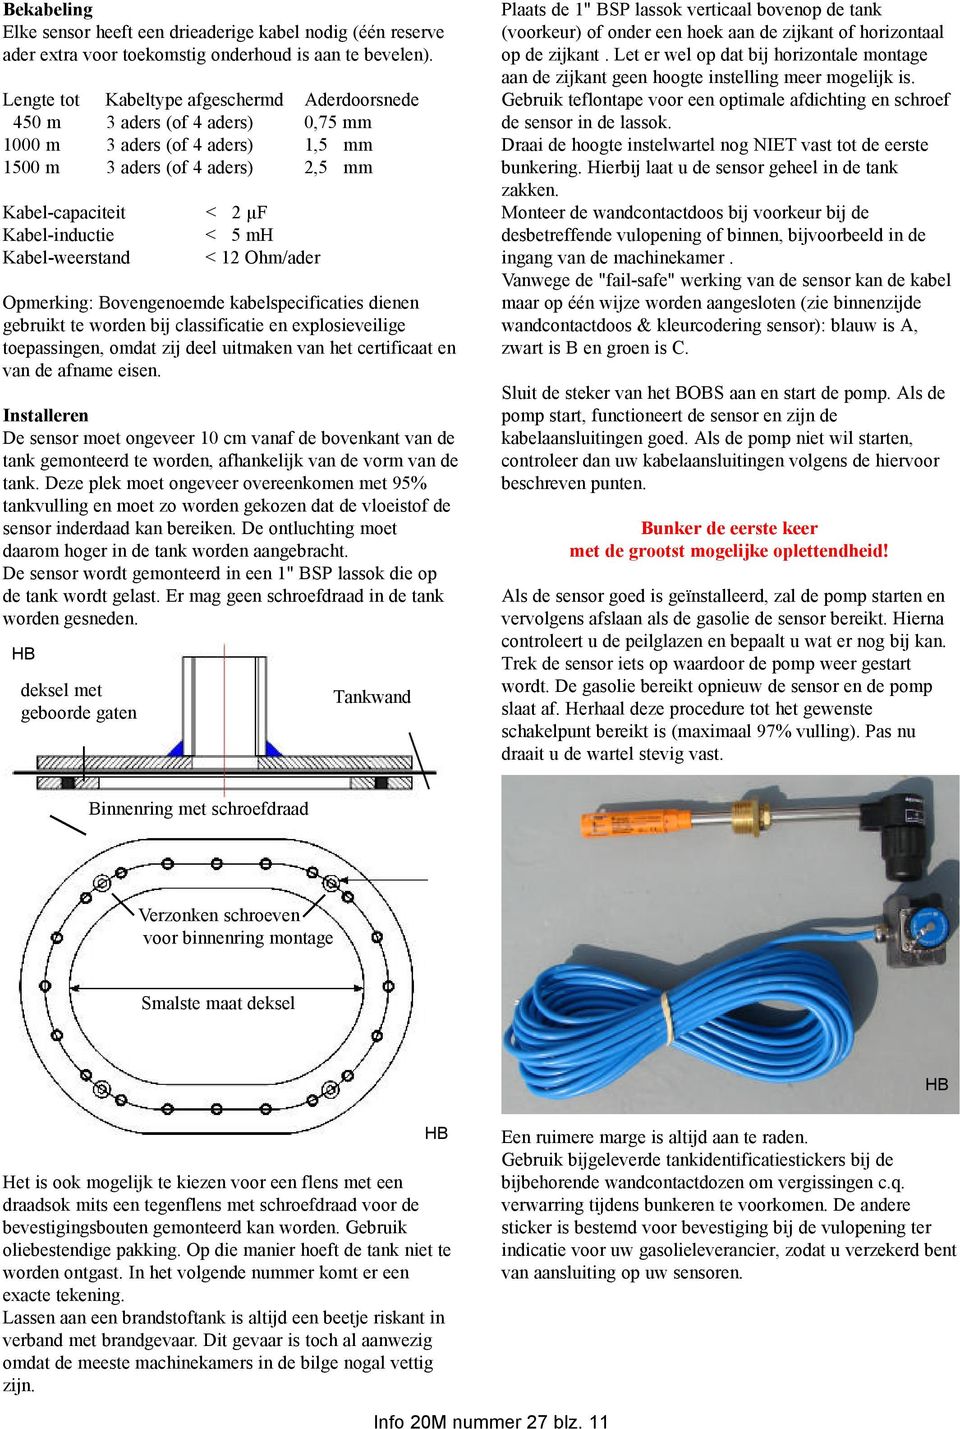 Kabel-weerstand < 12 Ohm/ader Opmerking: Bovengenoemde kabelspecificaties dienen gebruikt te worden bij classificatie en explosieveilige toepassingen, omdat zij deel uitmaken van het certificaat en